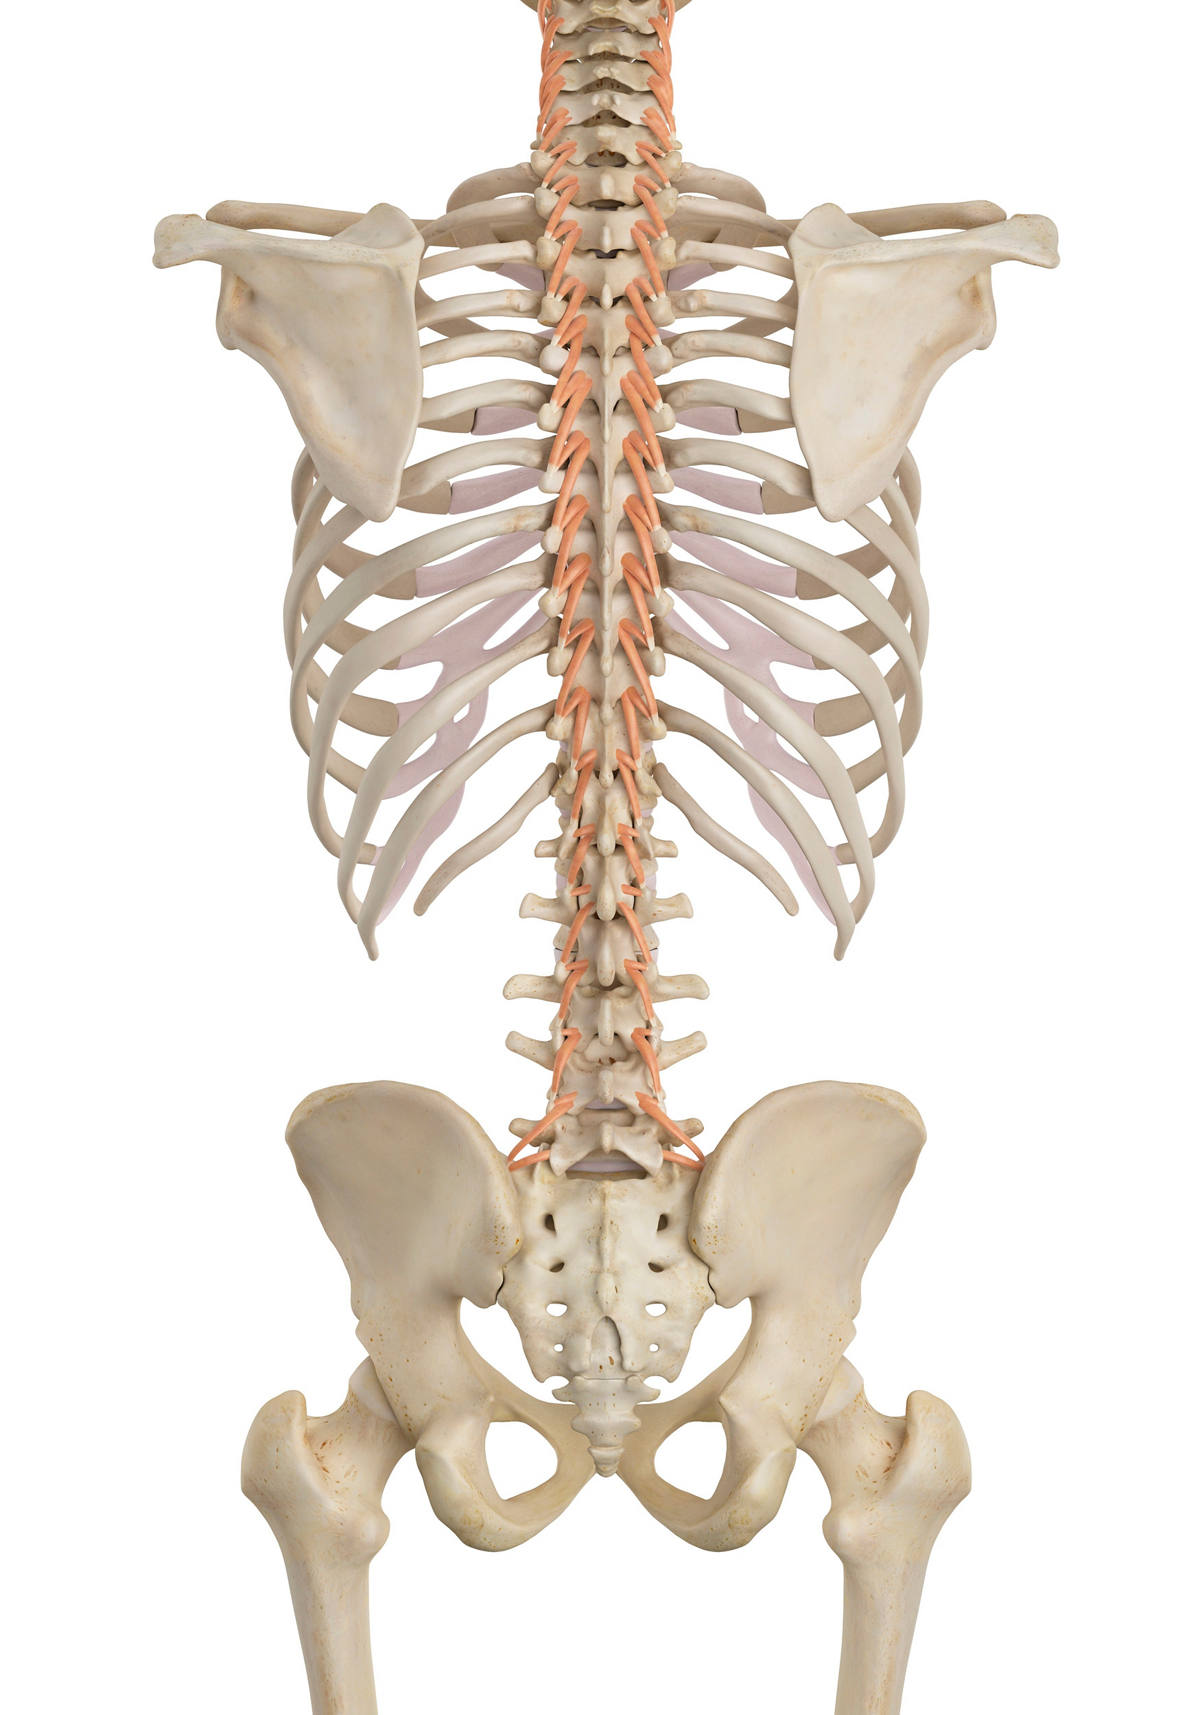 Die autochone Rückenmuskulatur an der Wirbelsäule